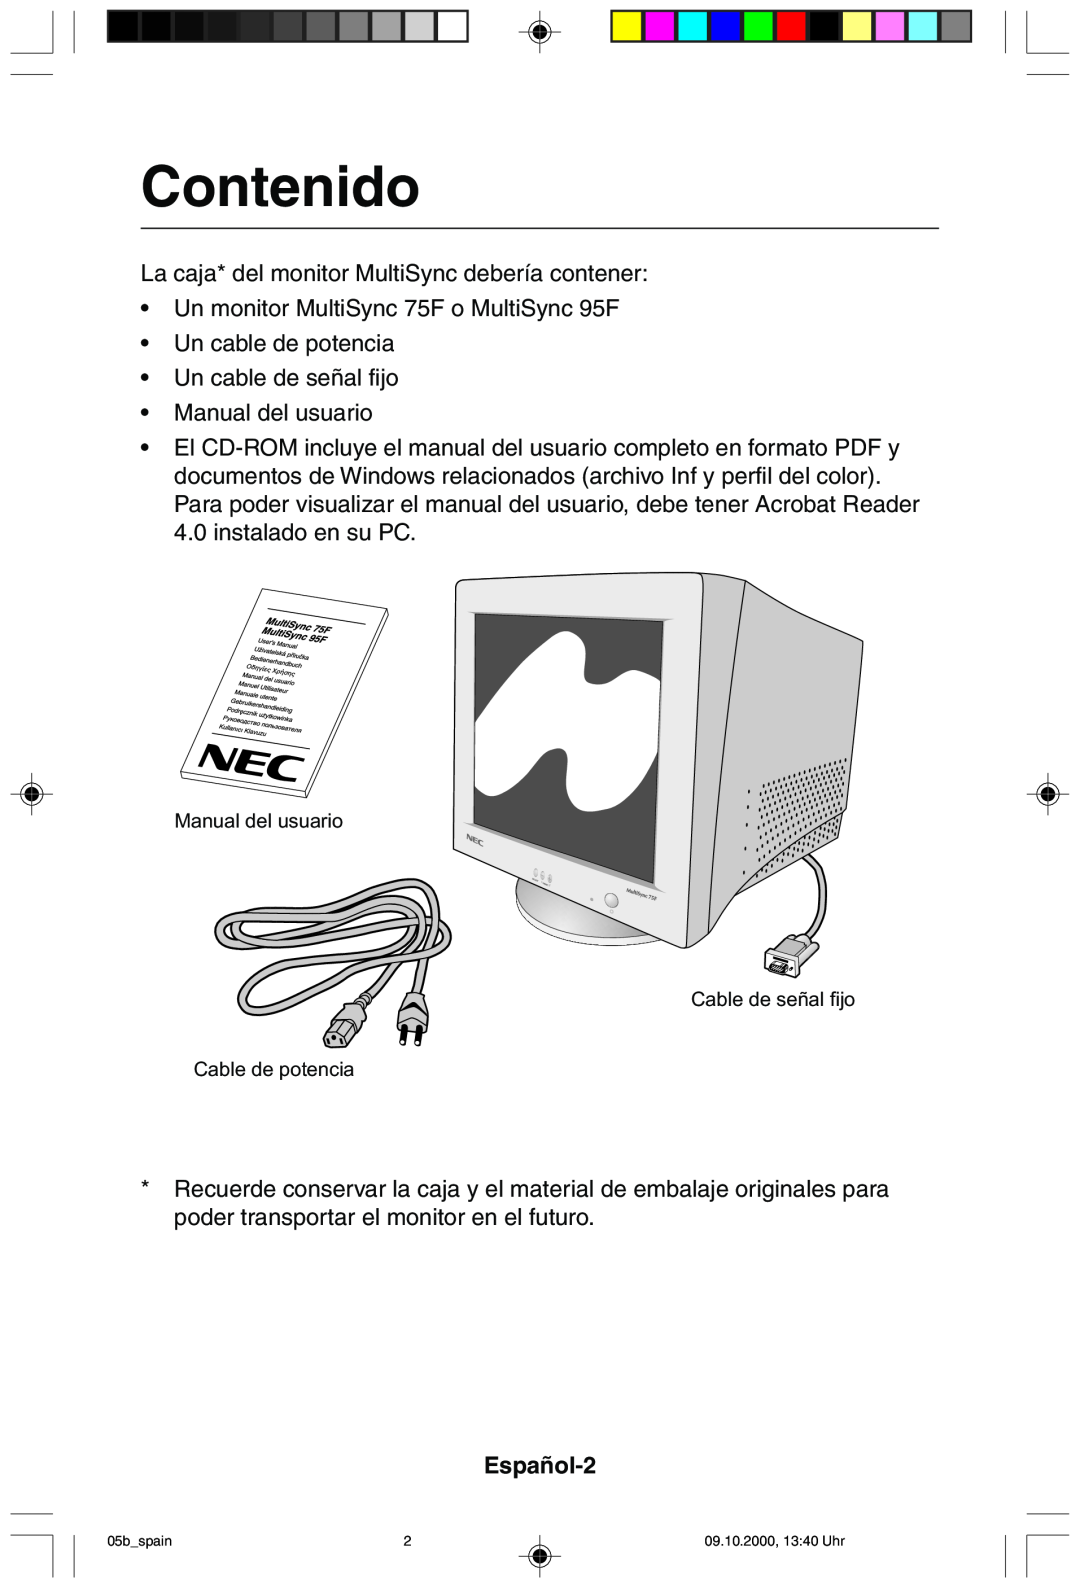 NEC 95F user manual Contenido, Español-2 